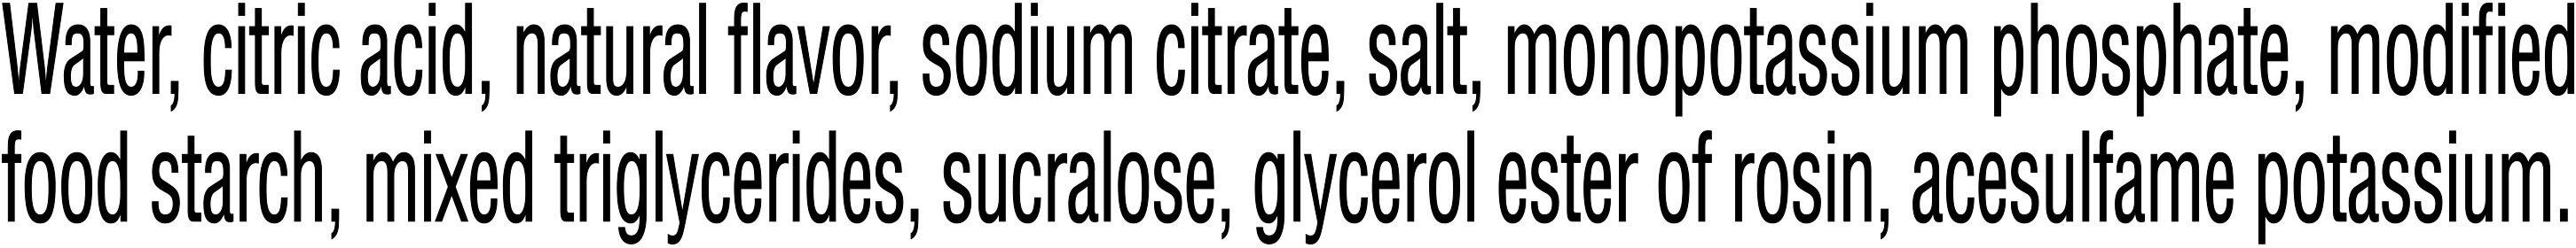 Image describing nutrition information for product Gatorade Zero Glacier Cherry